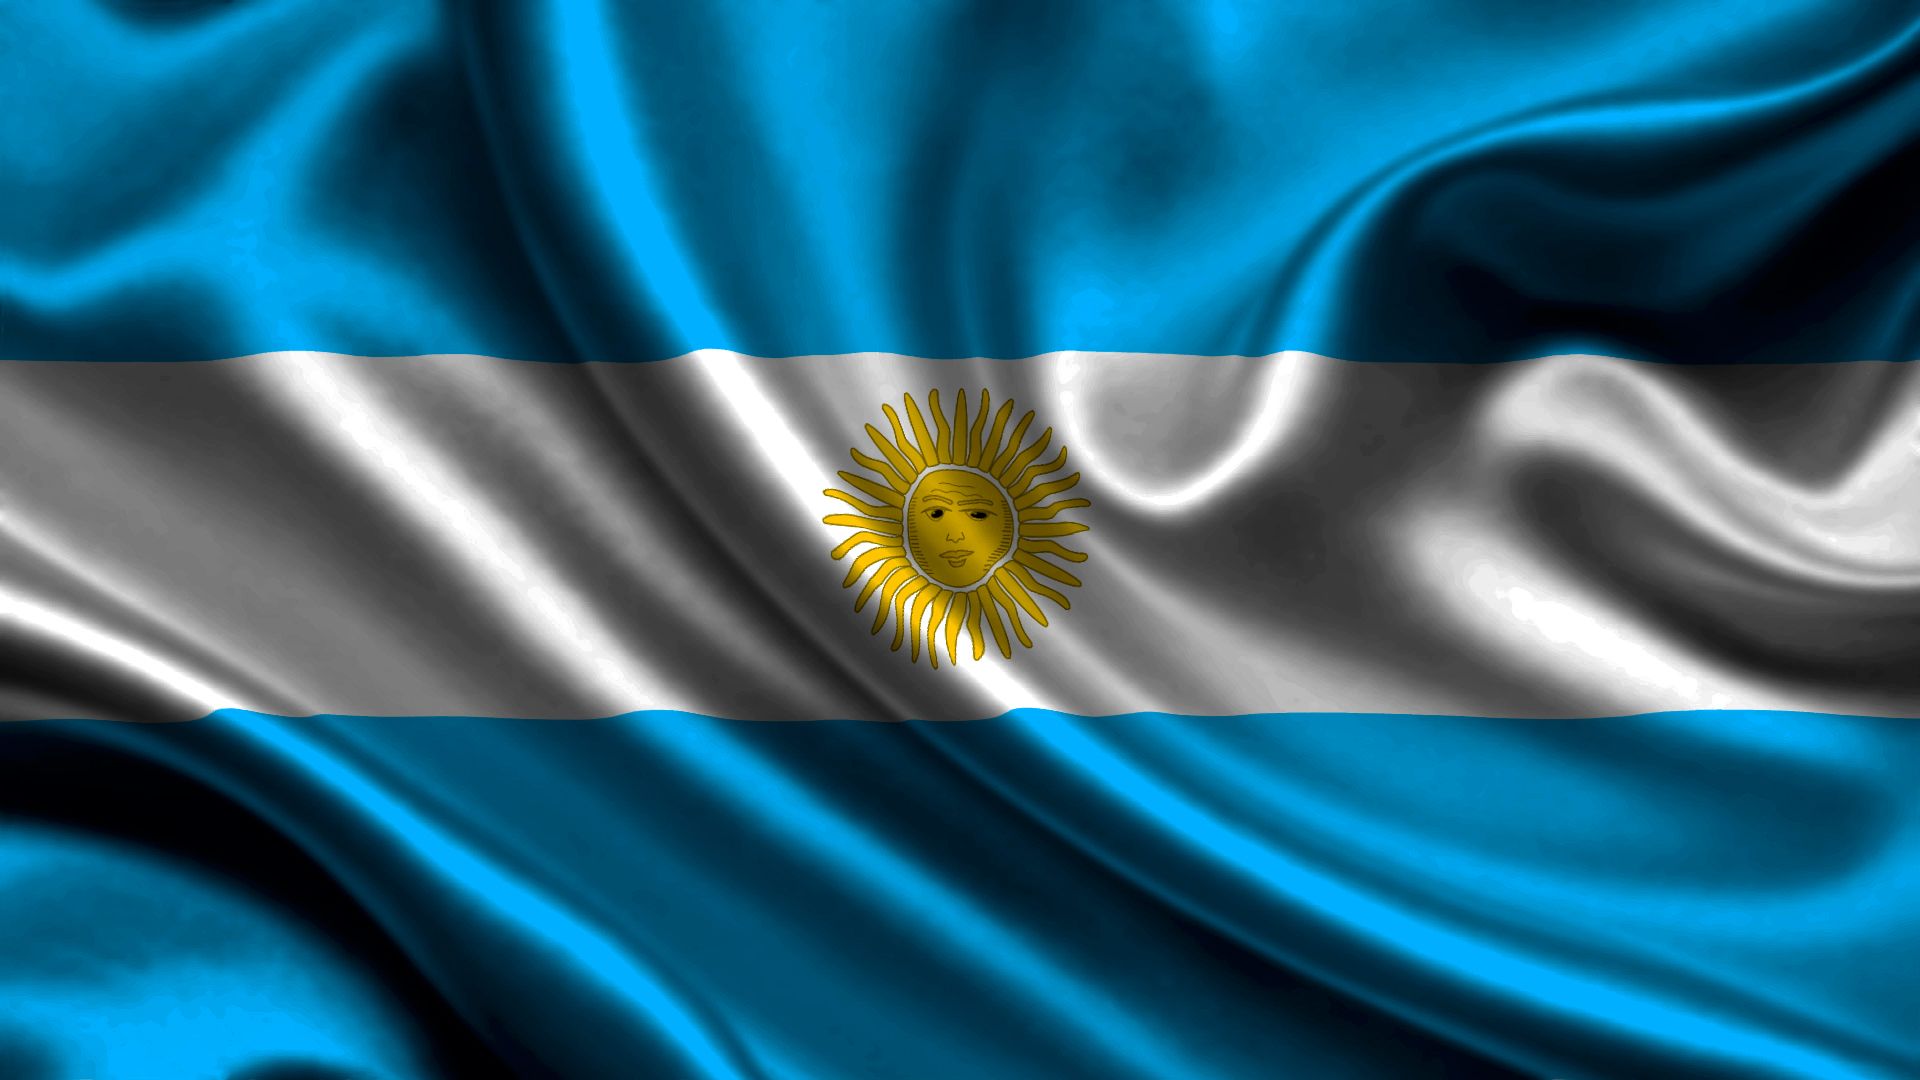 Скачать обои Флаг Аргентины на телефон бесплатно